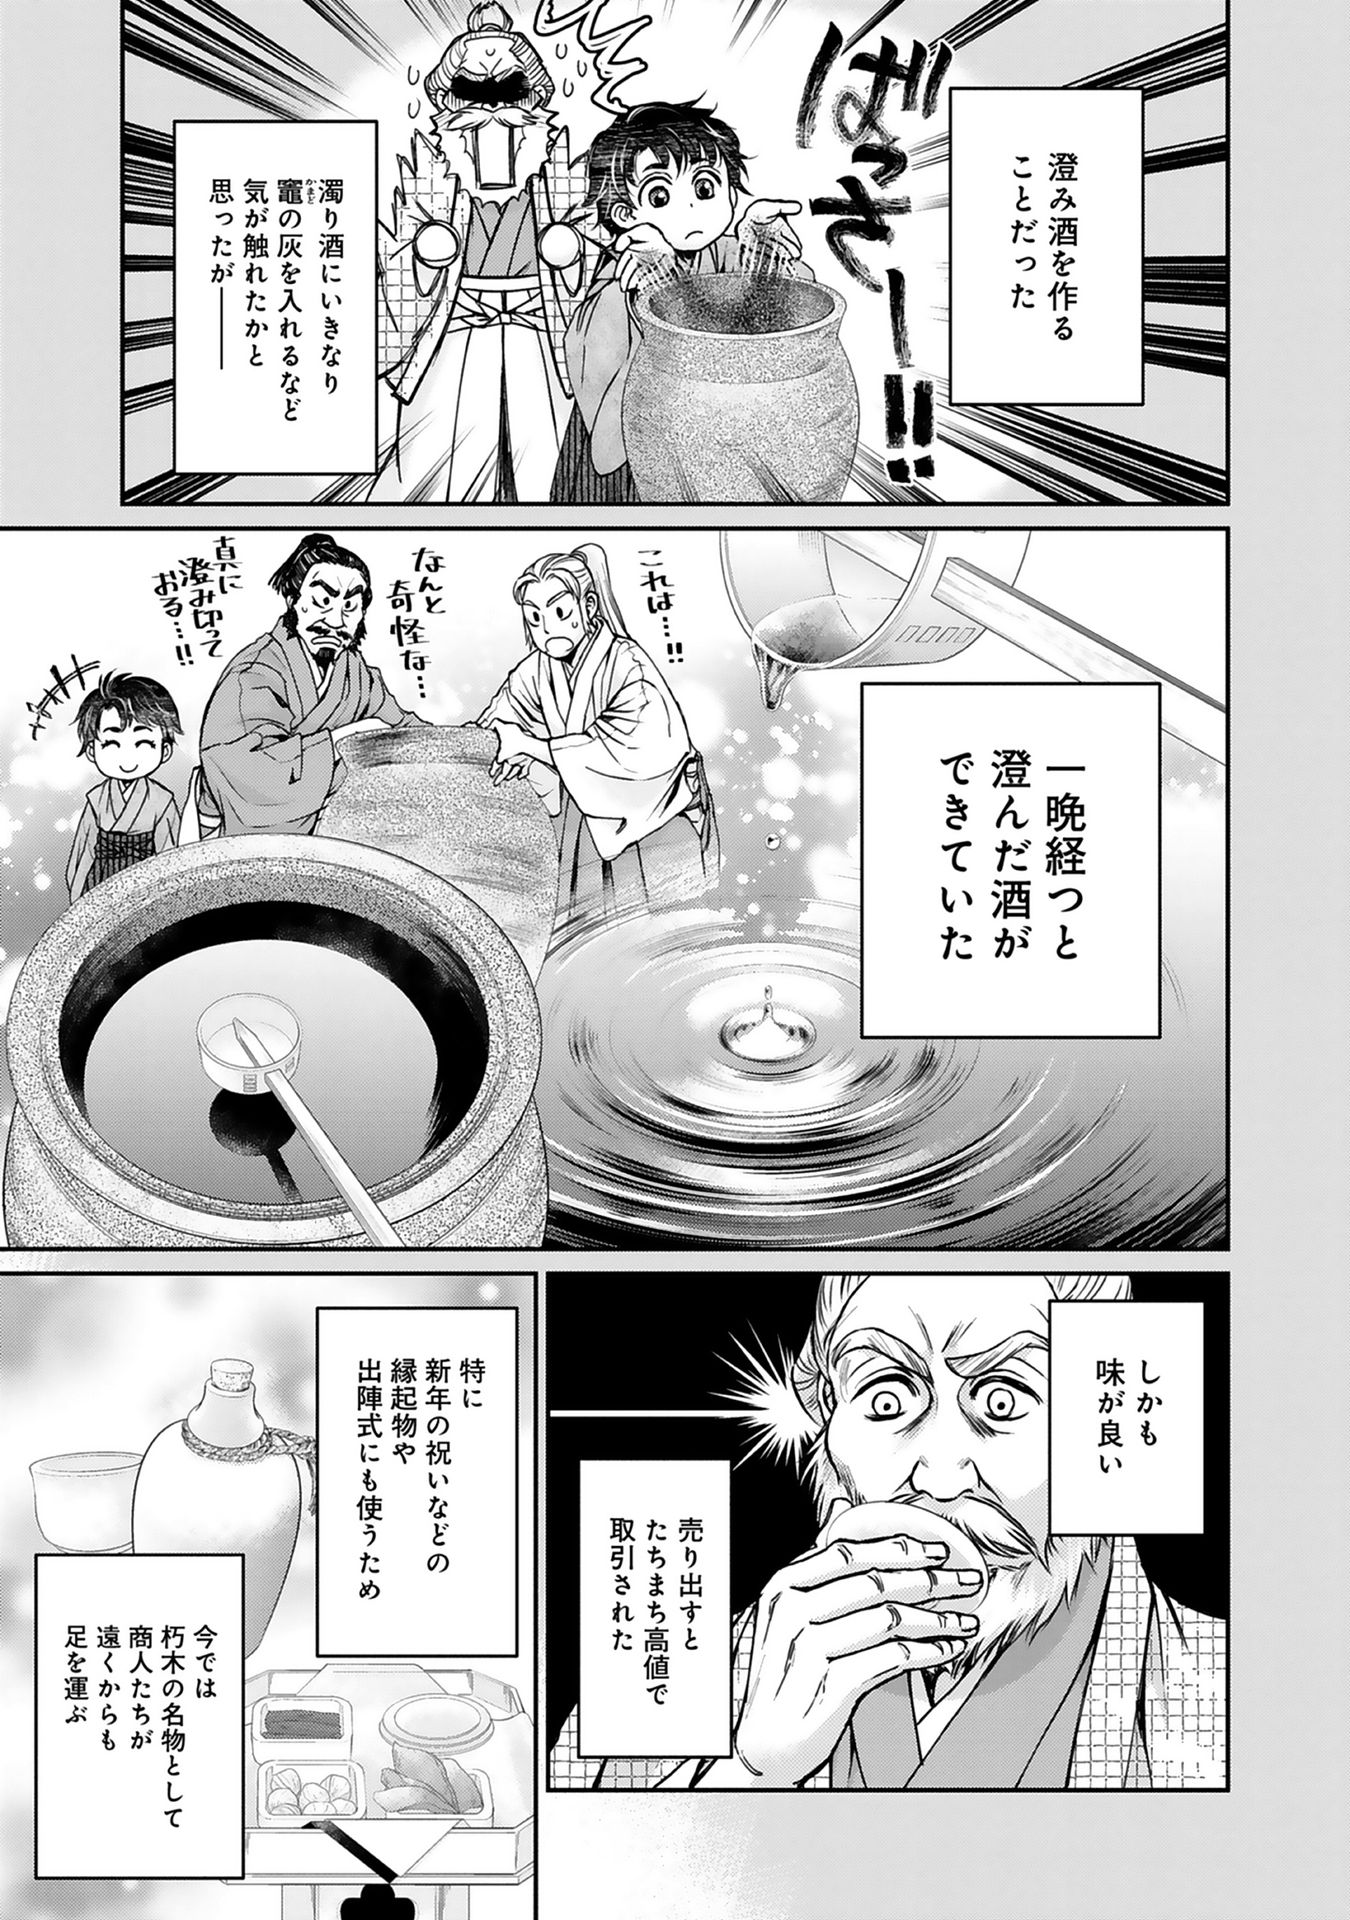 Afumi no Umi – Minamo ga Yureru Toki - Chapter 1 - Page 22